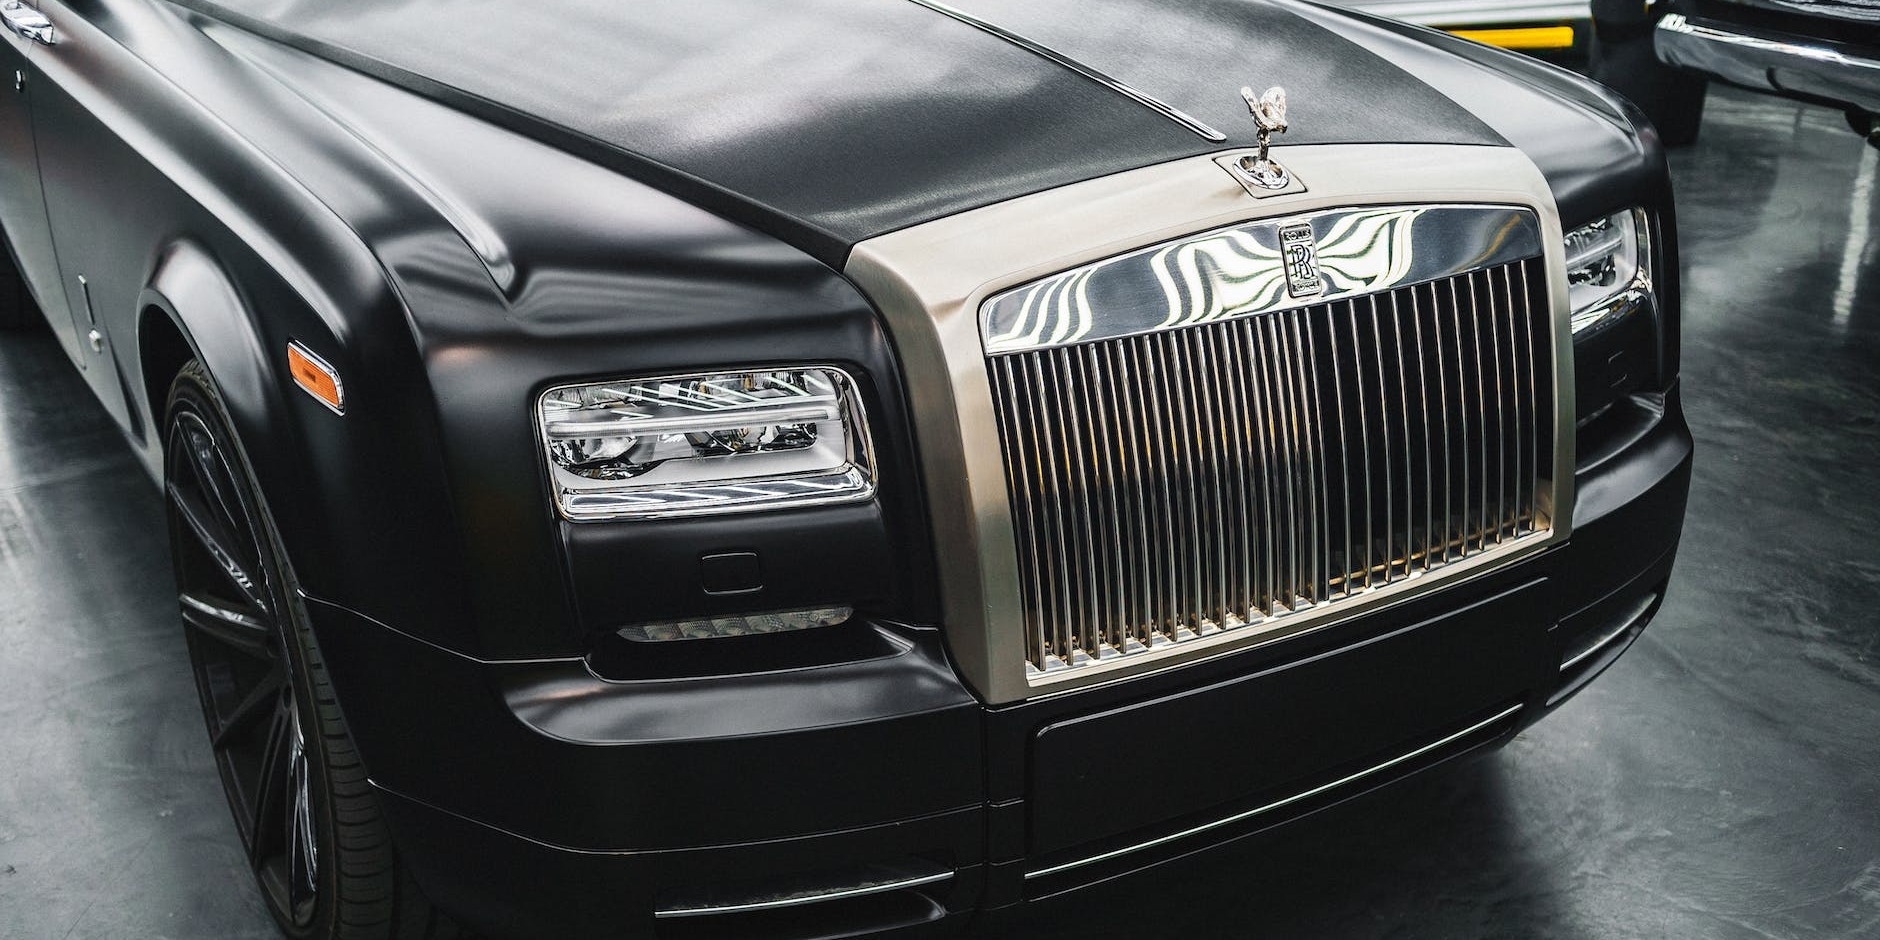 White Rolls Royce Phantom Hire vs White Bentley Mulsanne